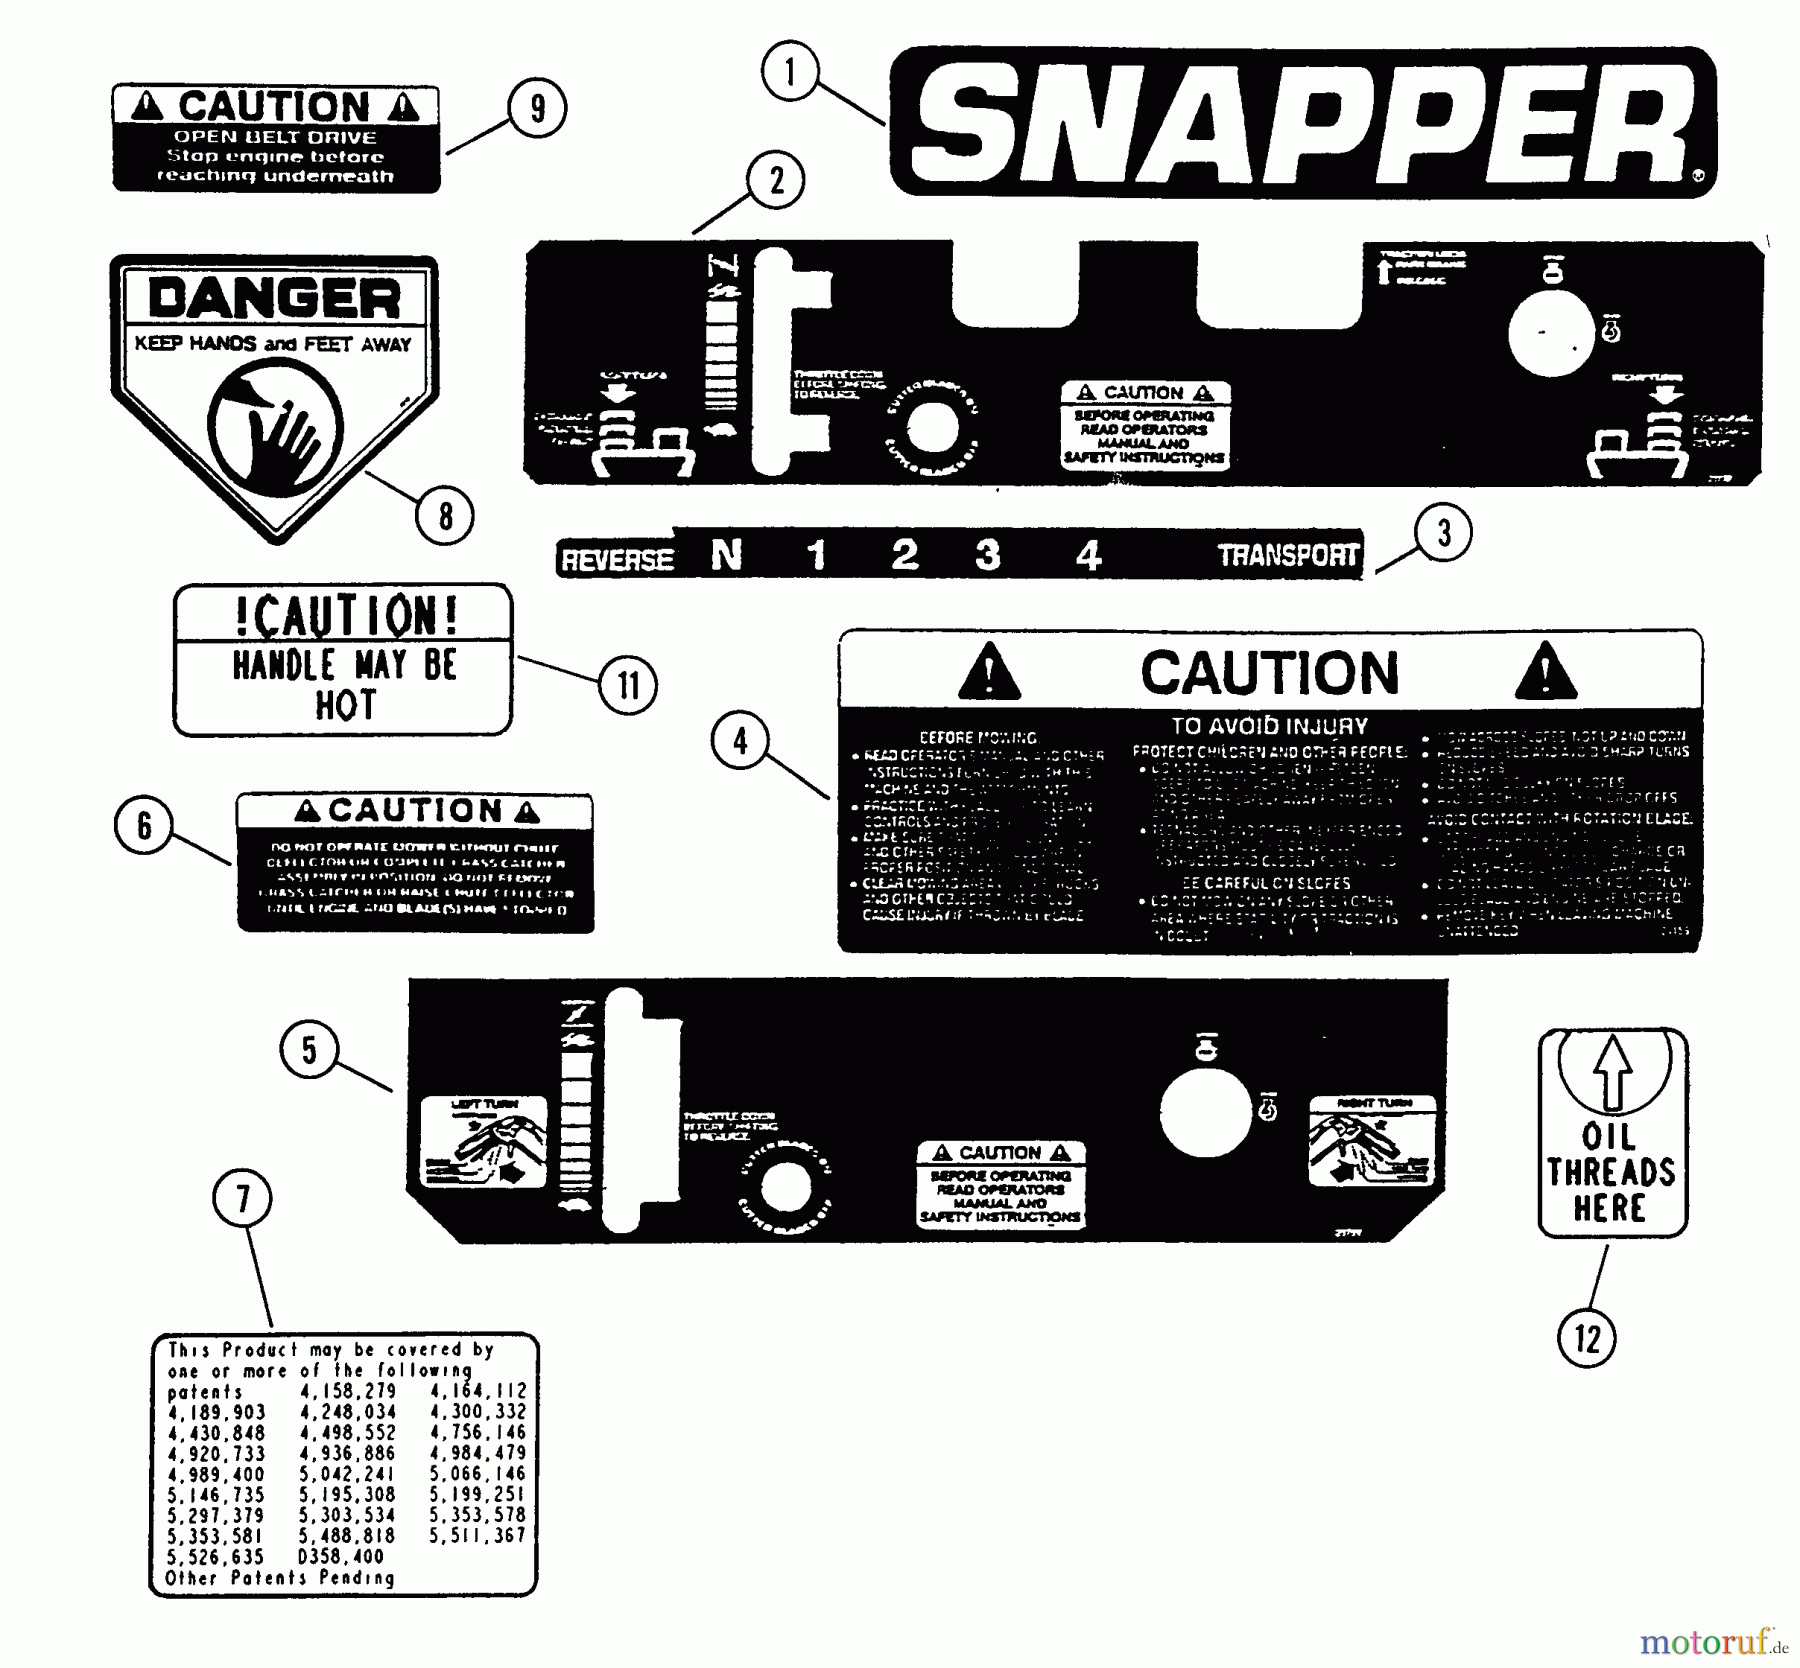  Snapper Rasenmäher für Großflächen SPP90KW - Snapper Wide-Area Walk-Behind Mower, 9 HP, Gear Drive, Pistol Grip, Series 0 Decals